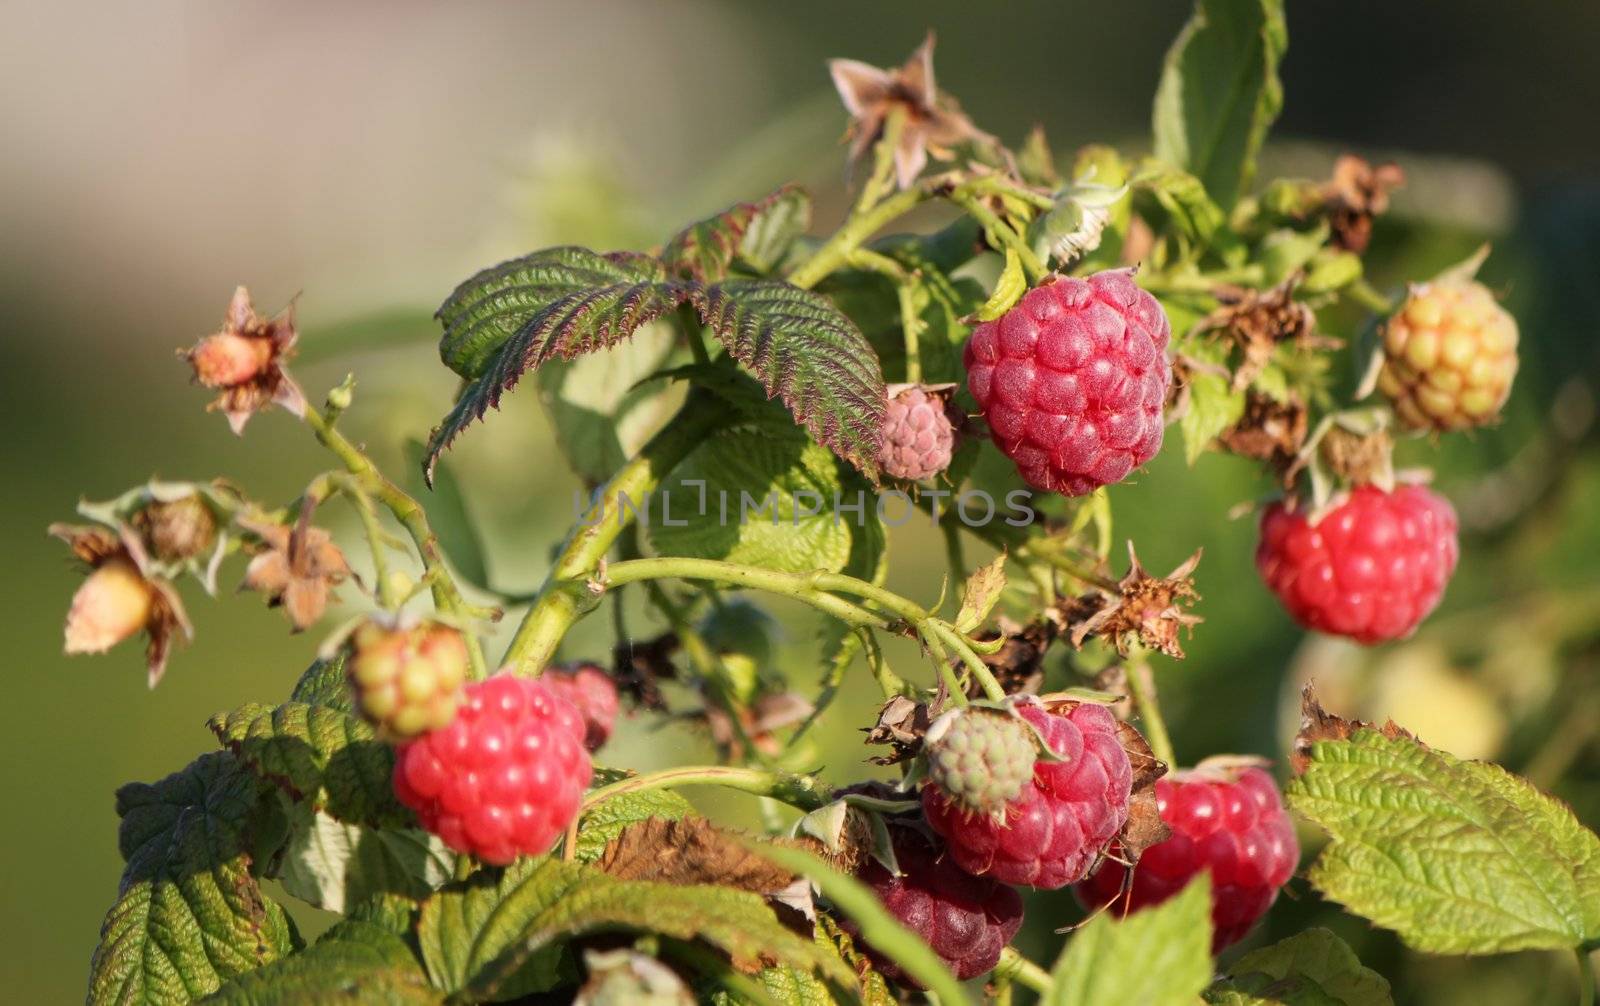 Raspberries by Elenaphotos21